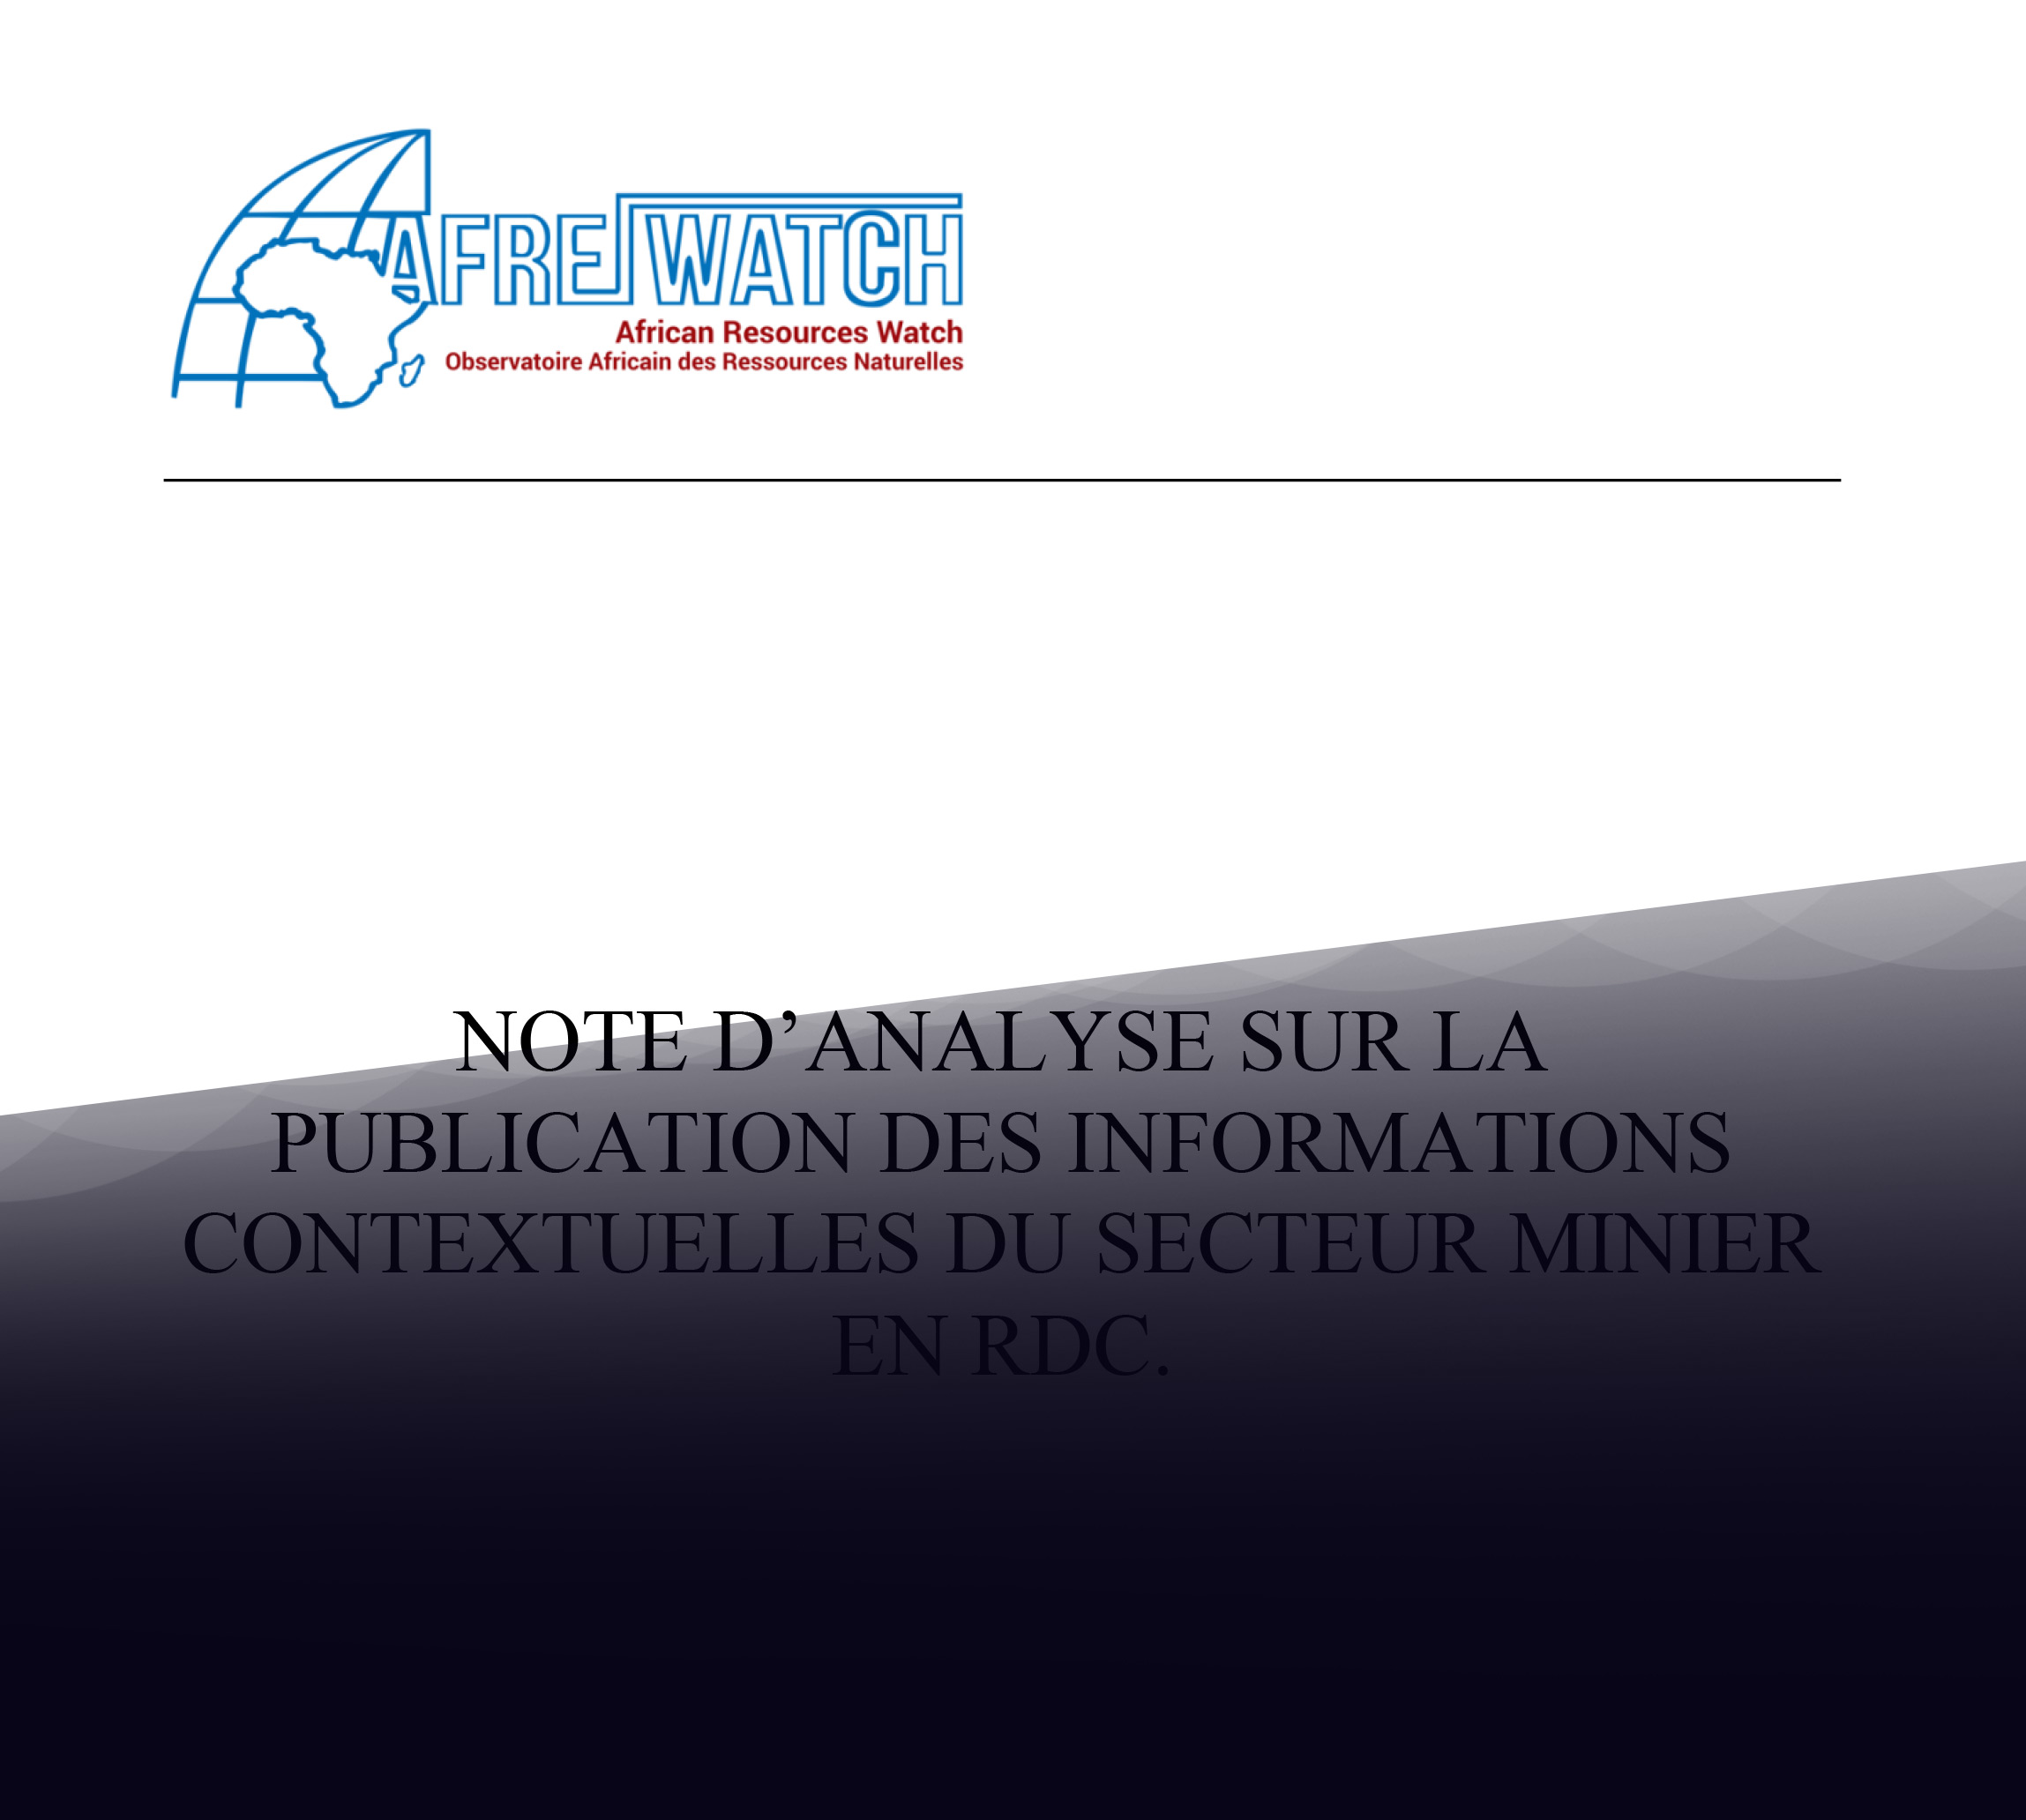 Note d’analyse sur la publication des informations contextuelles du secteur minier en RDC